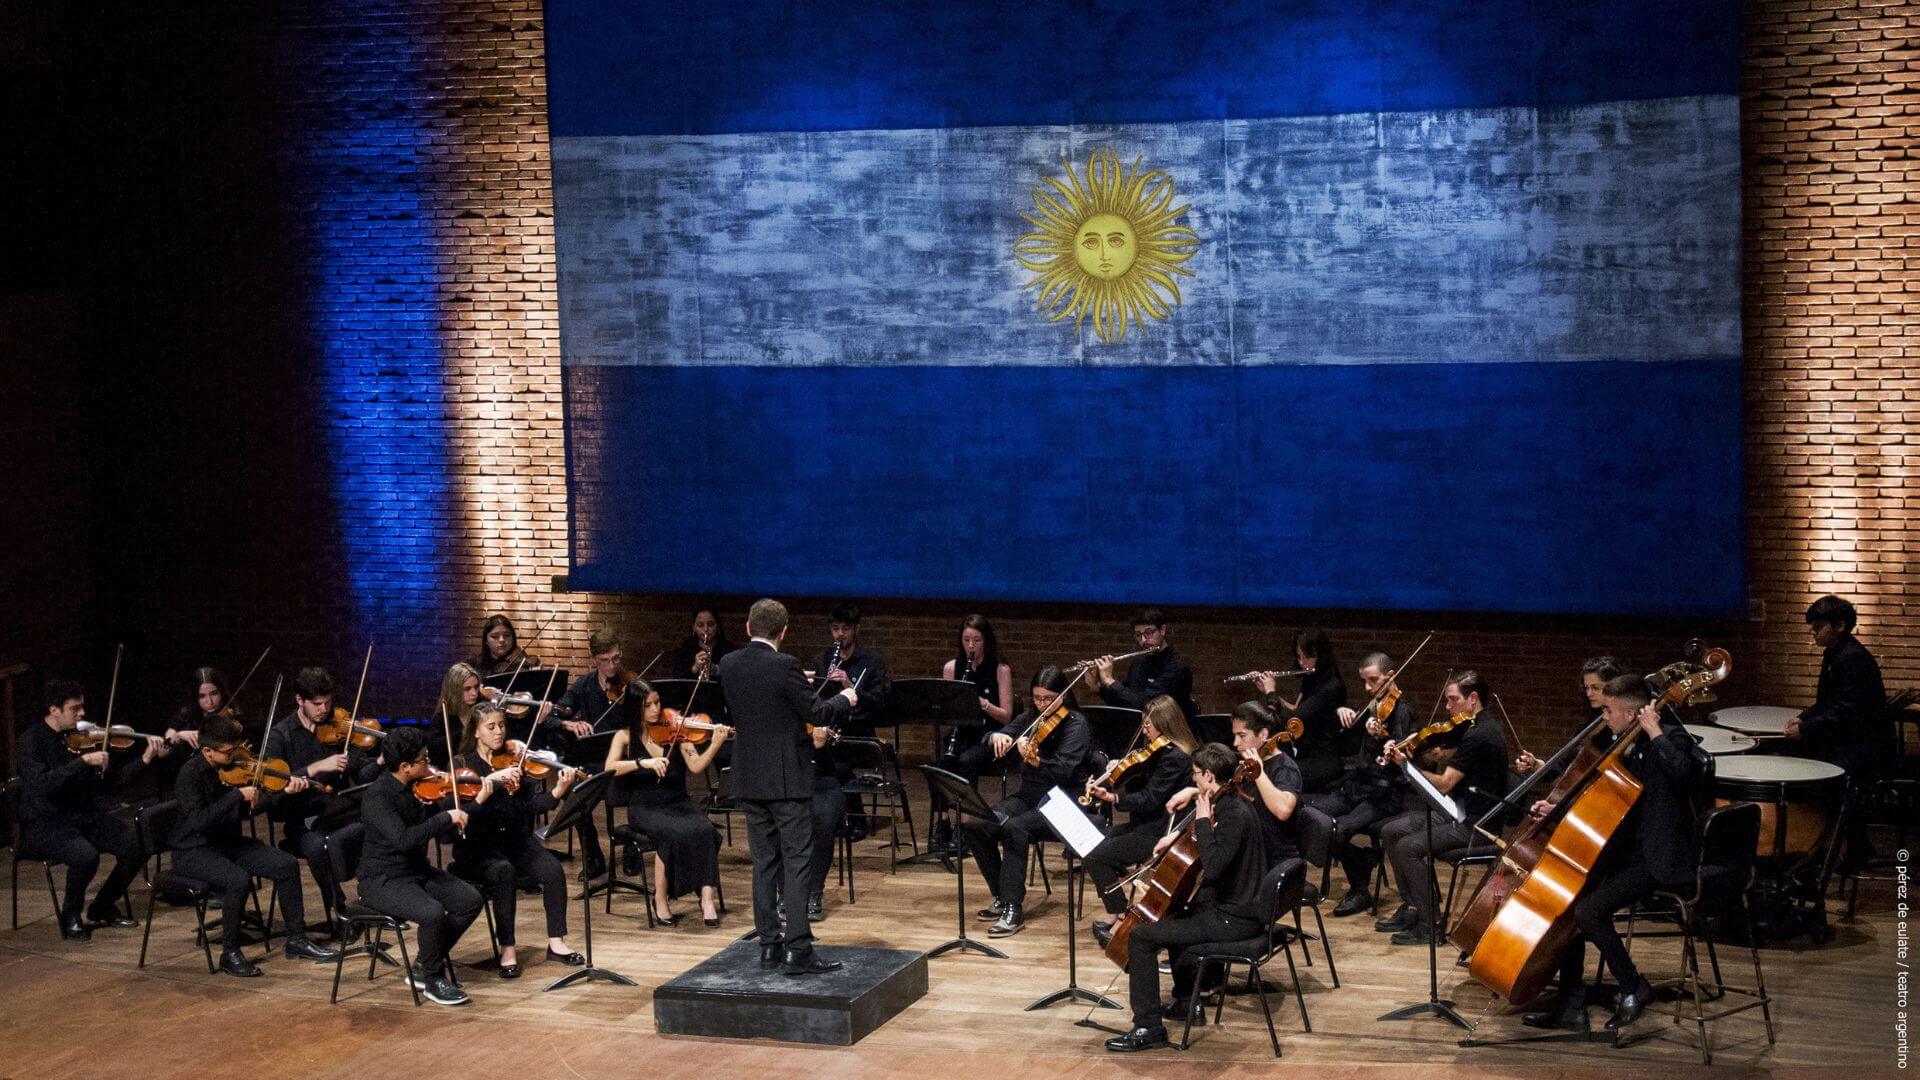 Funcion de la camerata academica del teatro argentino con bandera